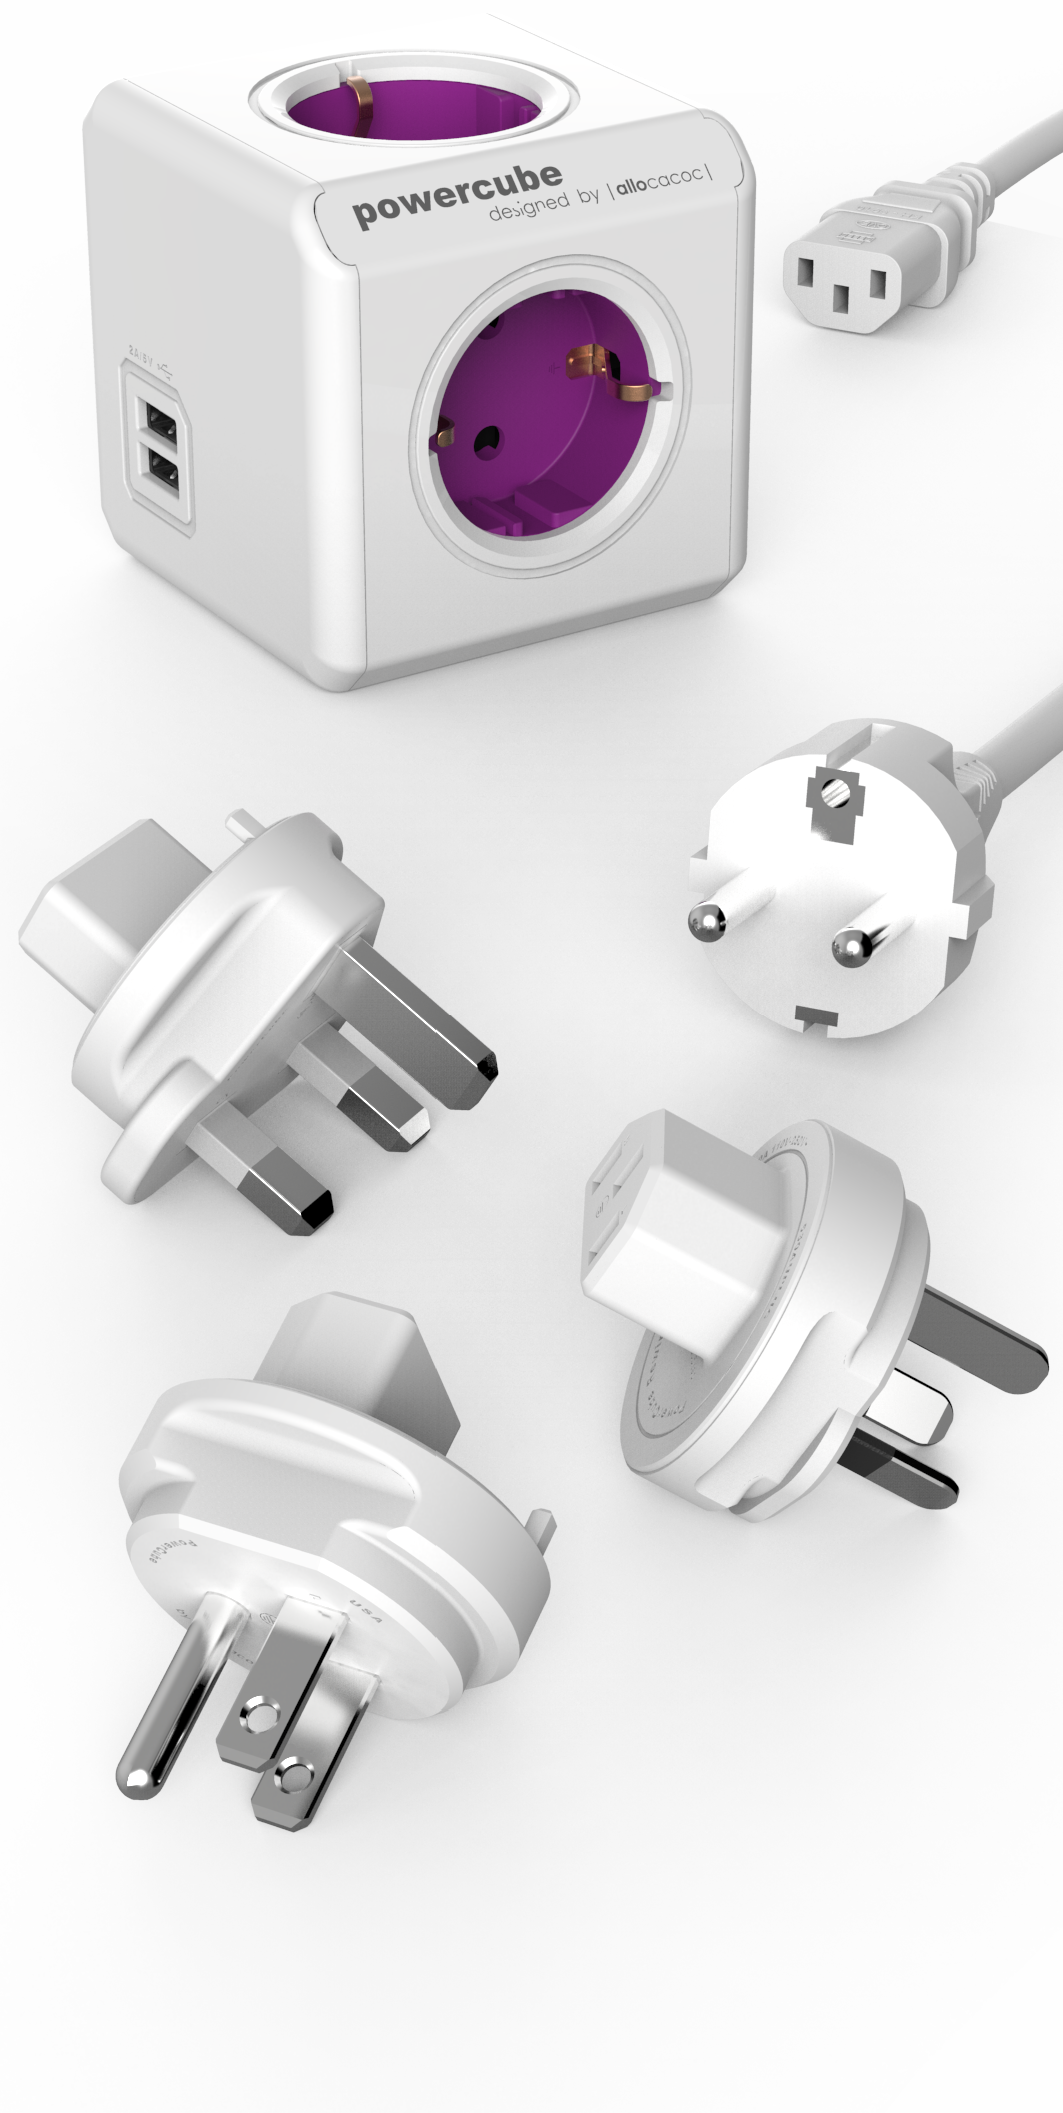 PowerCube ReWirable USB met reisplugs en apparaatsnoer